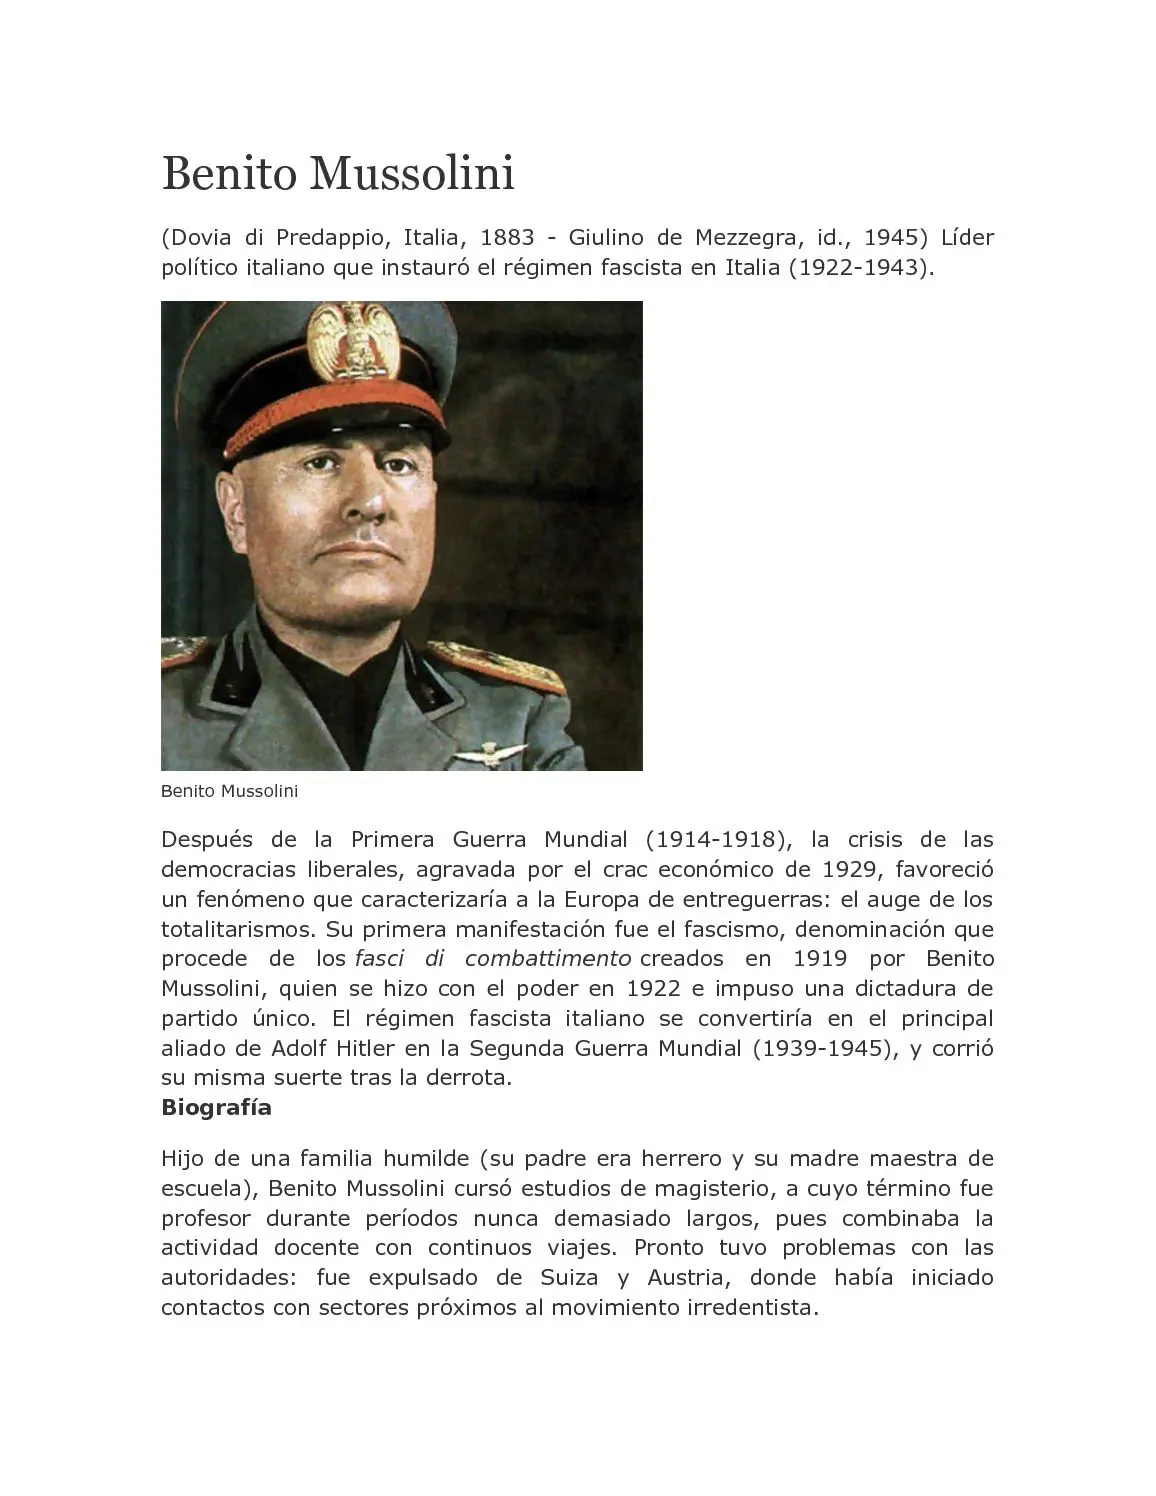 mussolini resumen - Qué fue lo más importante que hizo Benito Mussolini